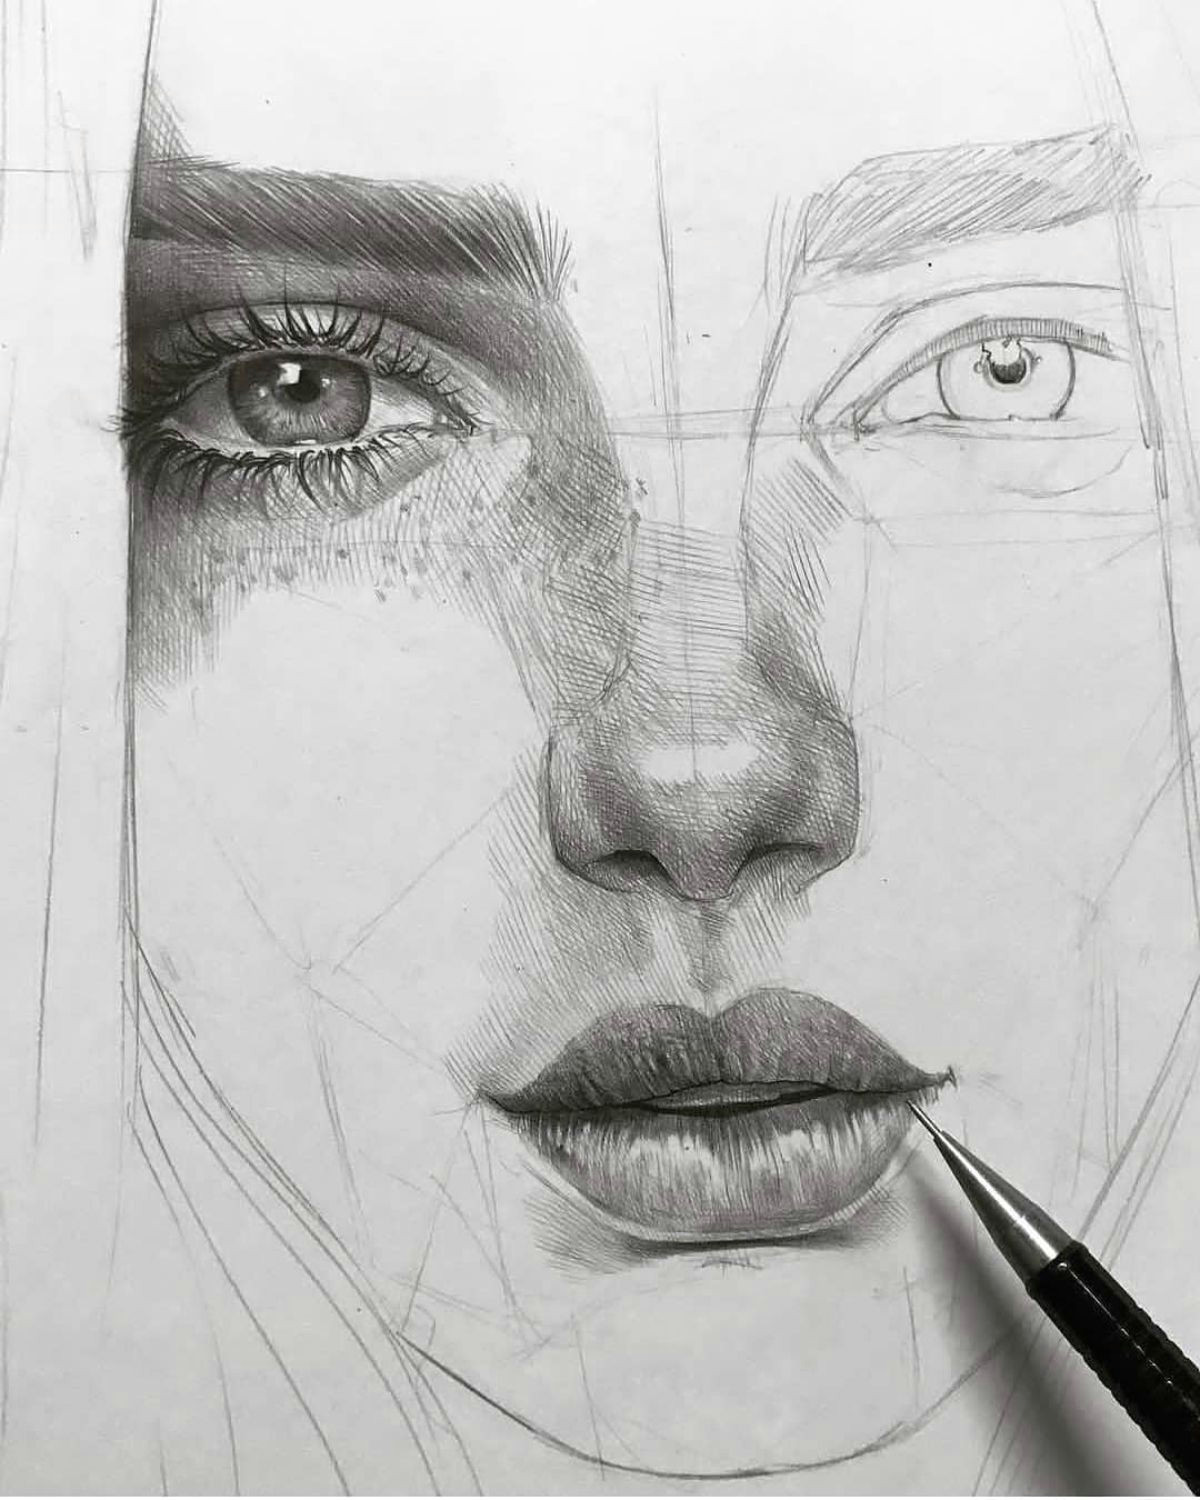 amazing art by maloart sketch eye pencil drawing portrait